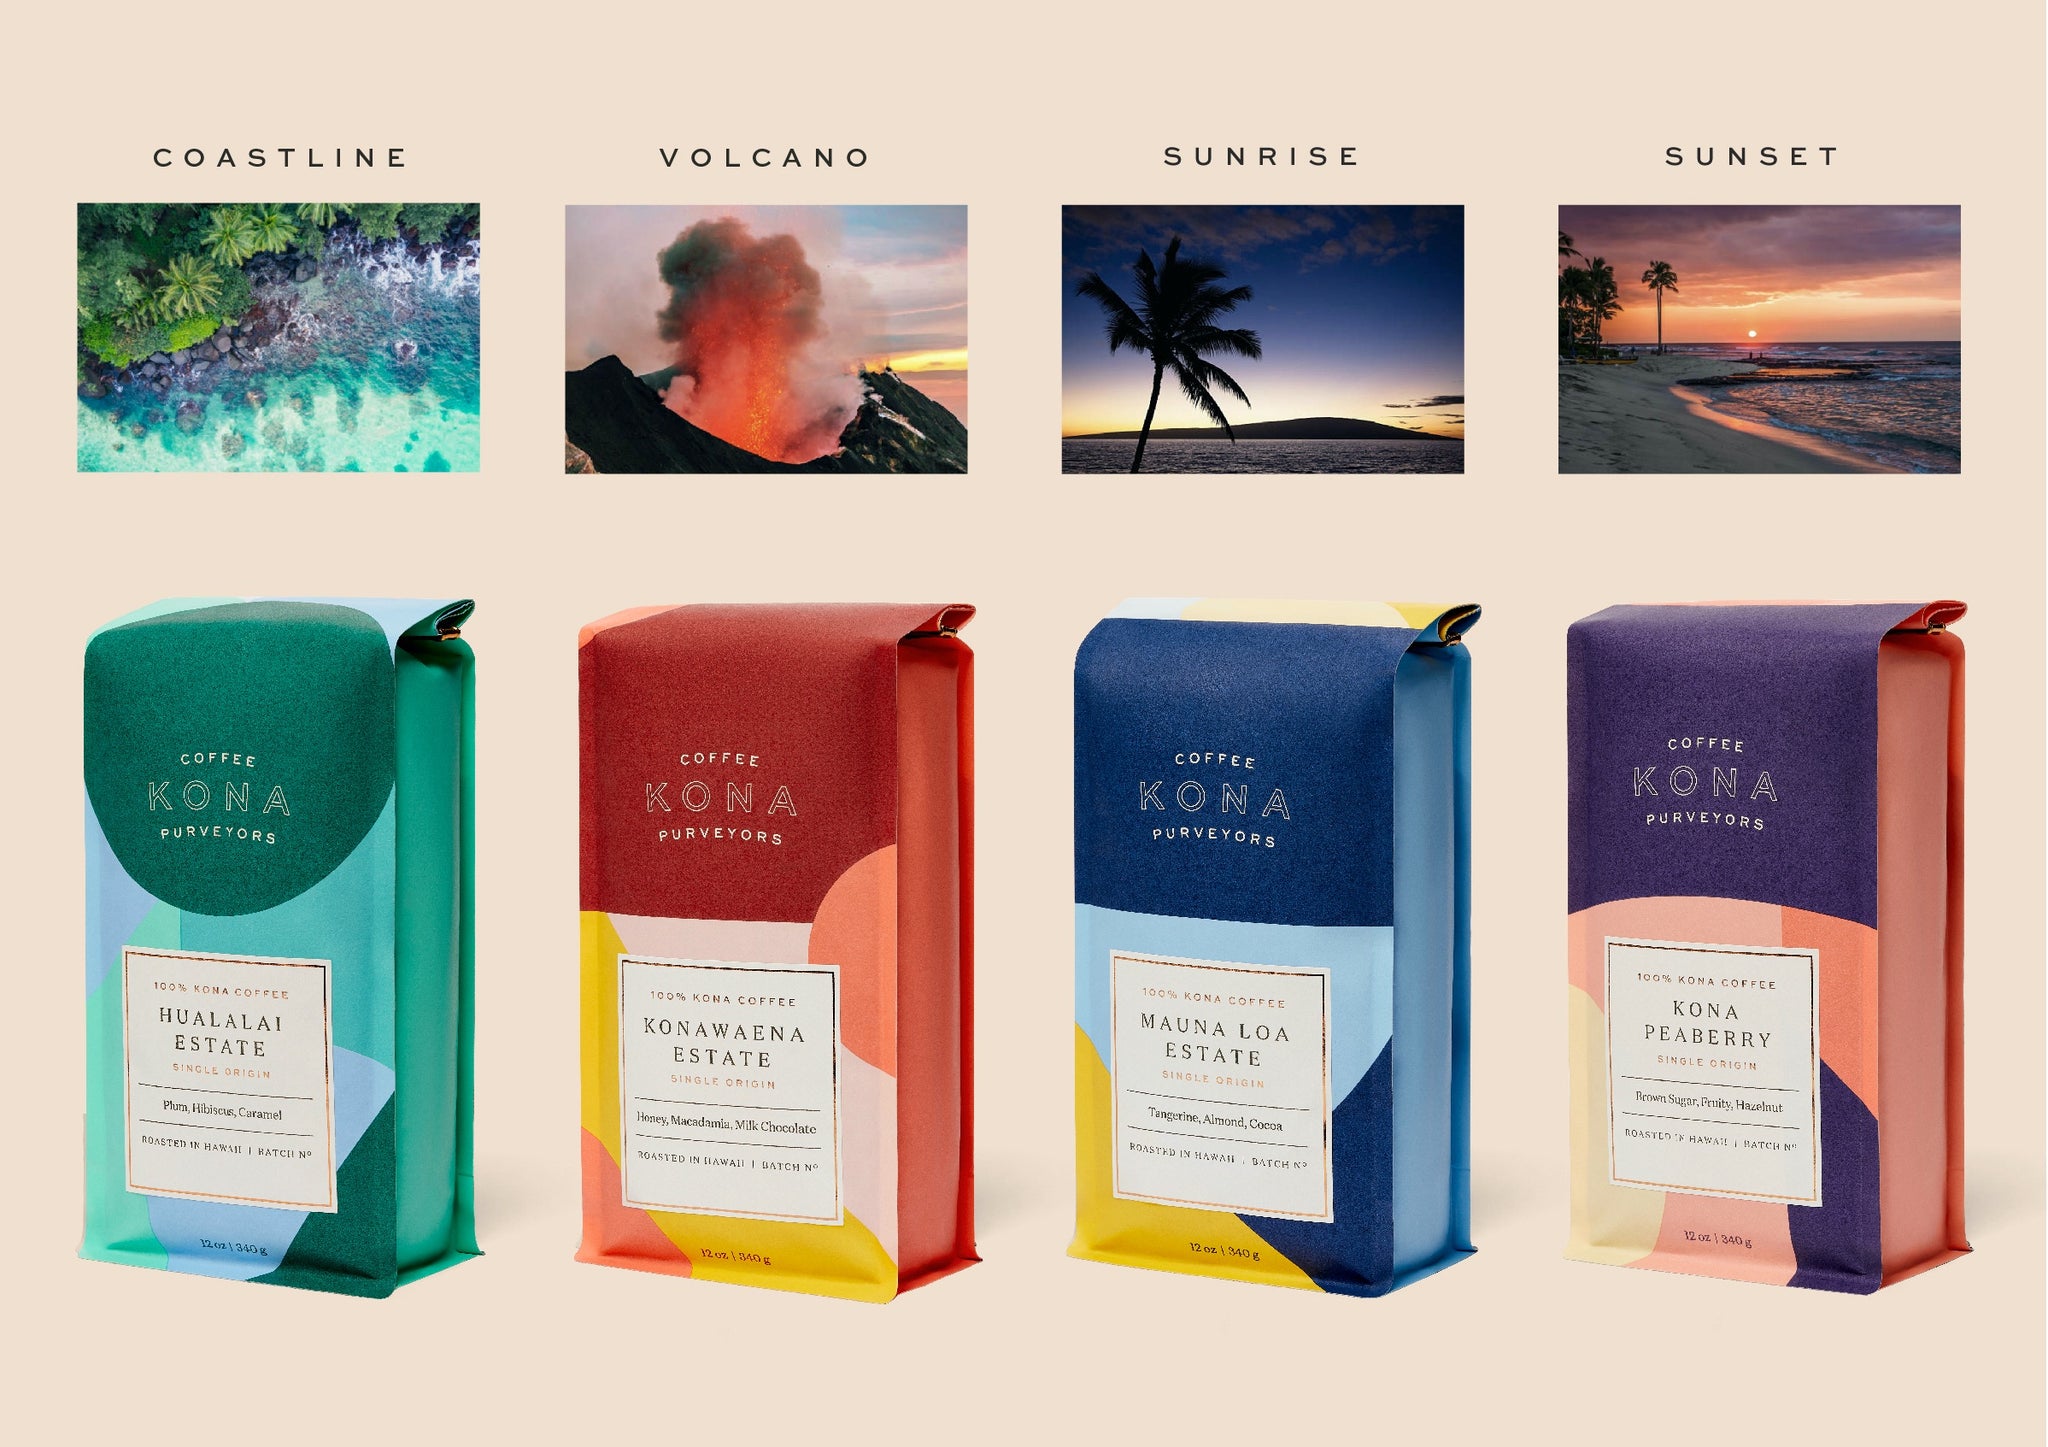 Kona Coffee Purveyors bag design inspiration